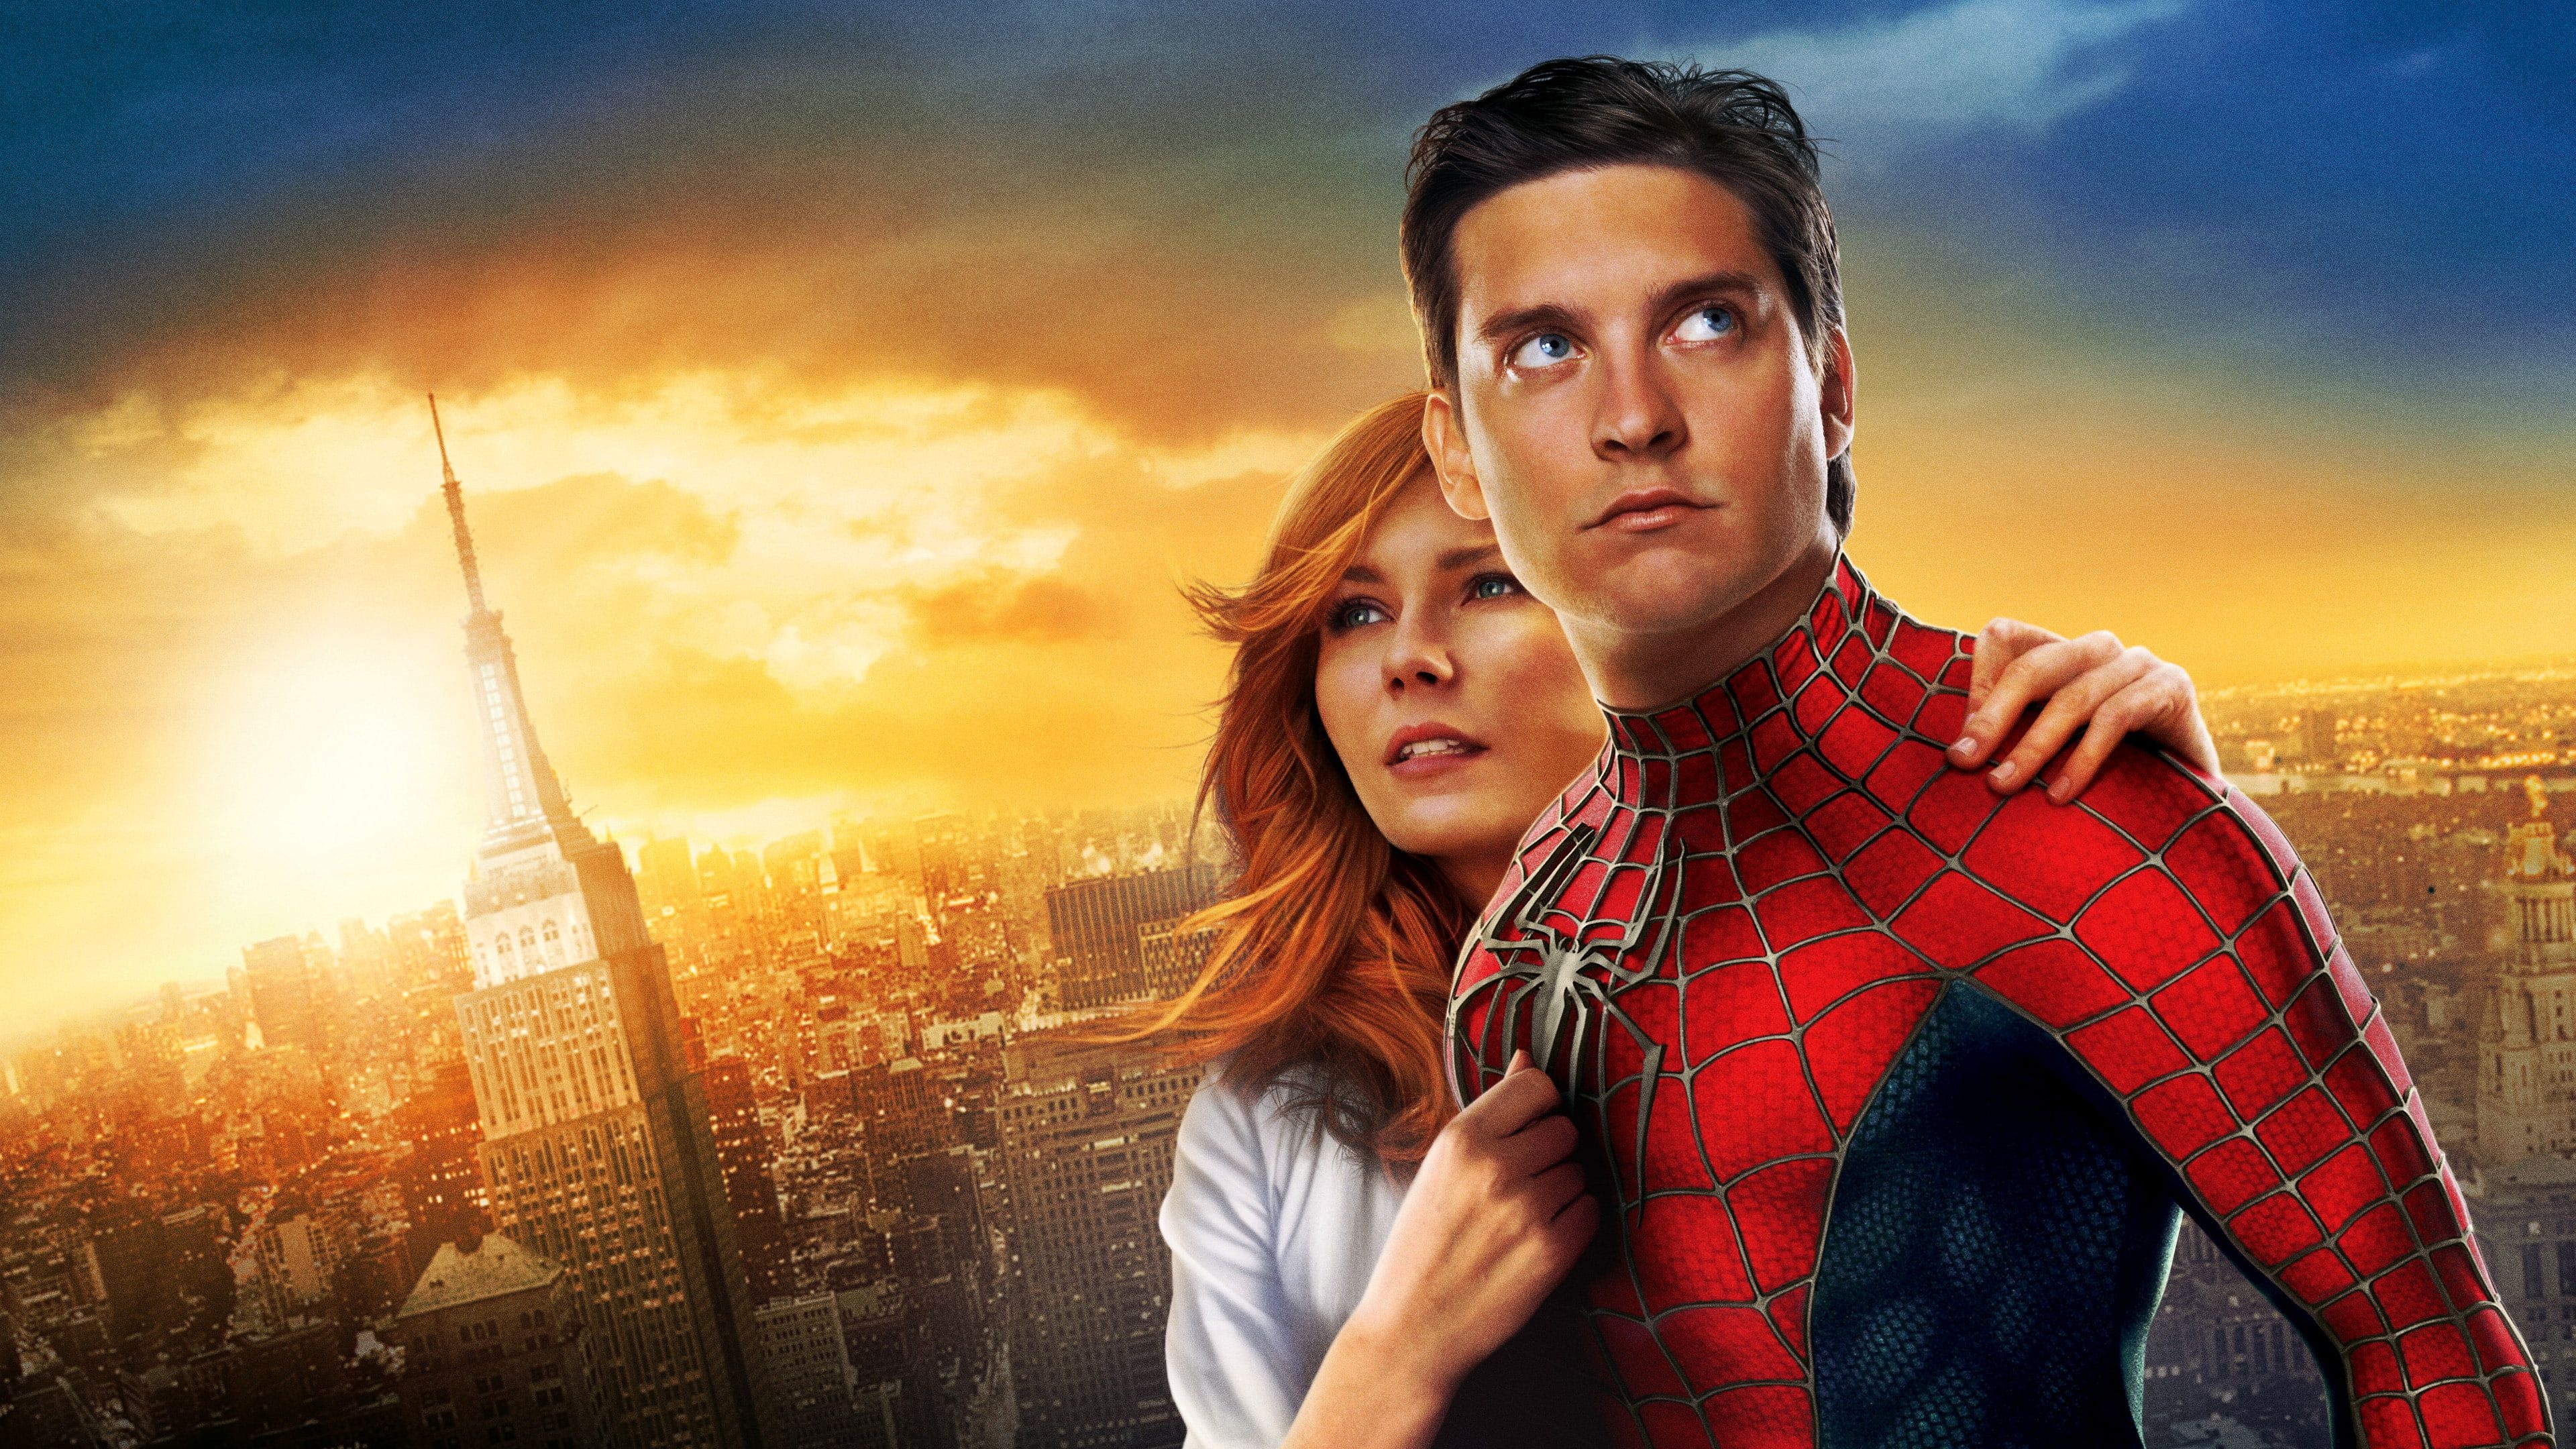 Tobey Maguire, Spider-Man actor, Kirsten Dunst, Marvel Comics wallpaper, 3840x2160 4K Desktop